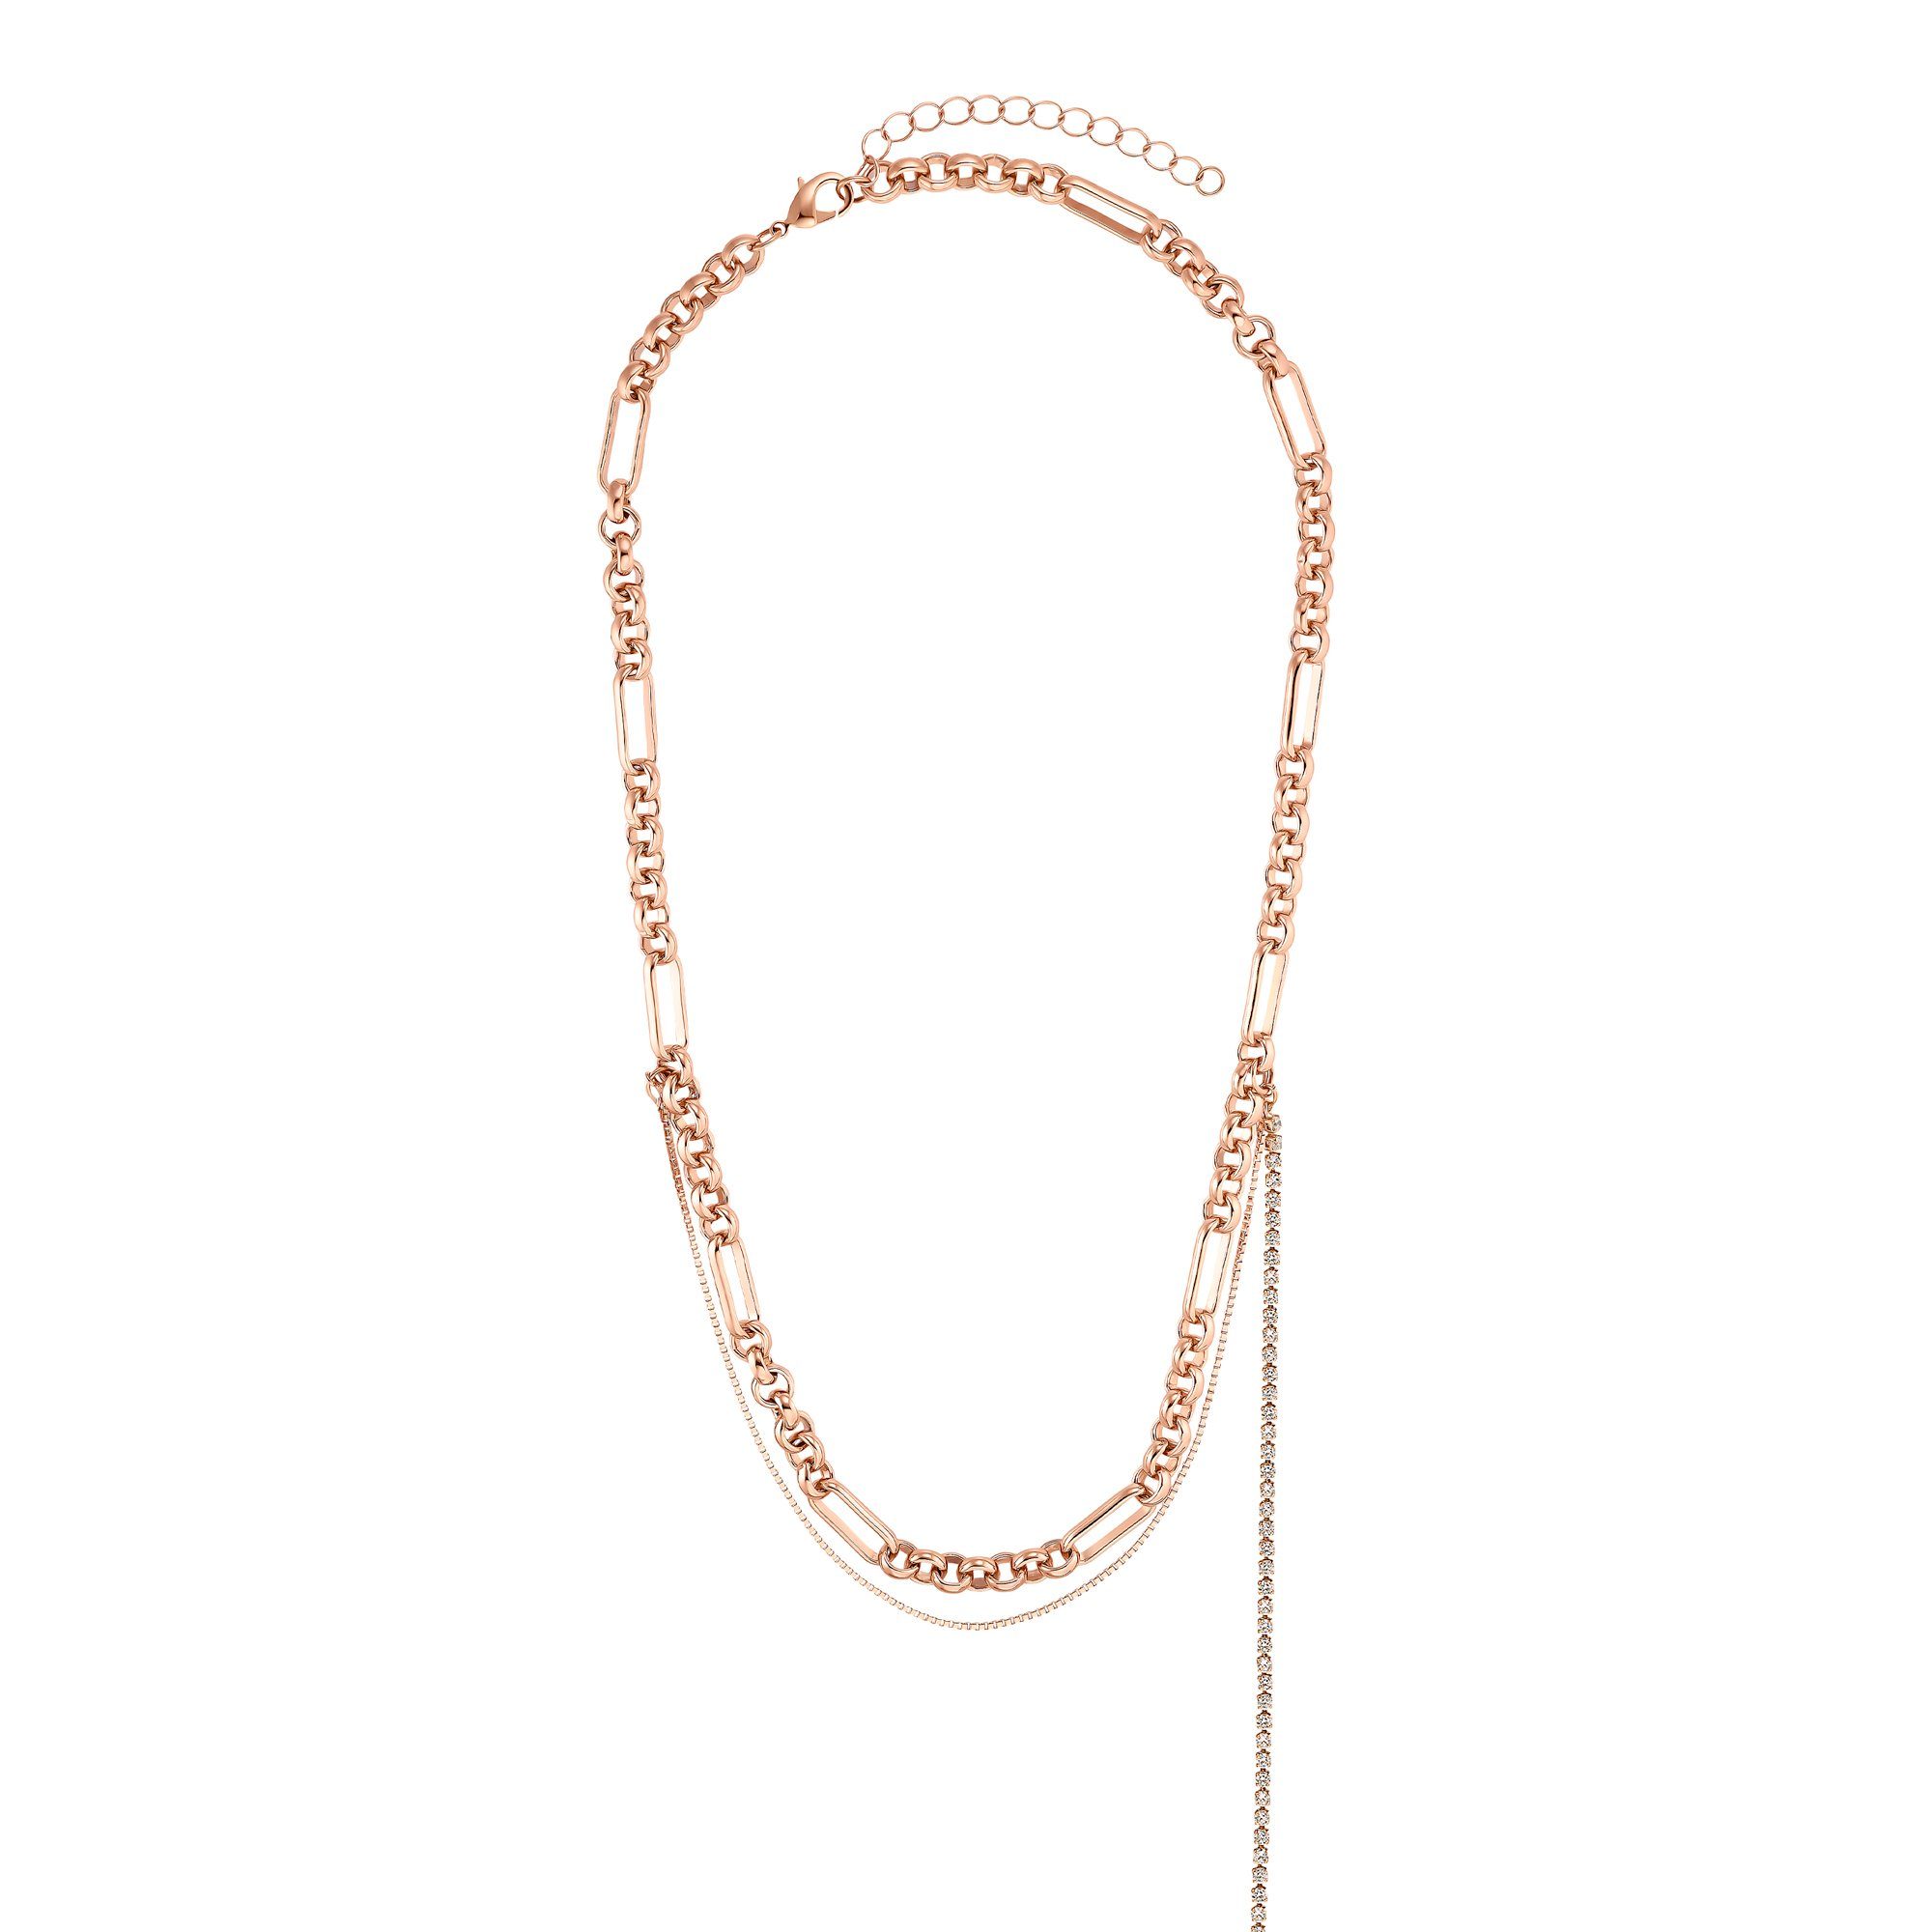 Heideman Collier »Zara rose goldfarbend« (inkl. Geschenkverpackung),  ausgefallene Kette für Frauen online kaufen | OTTO